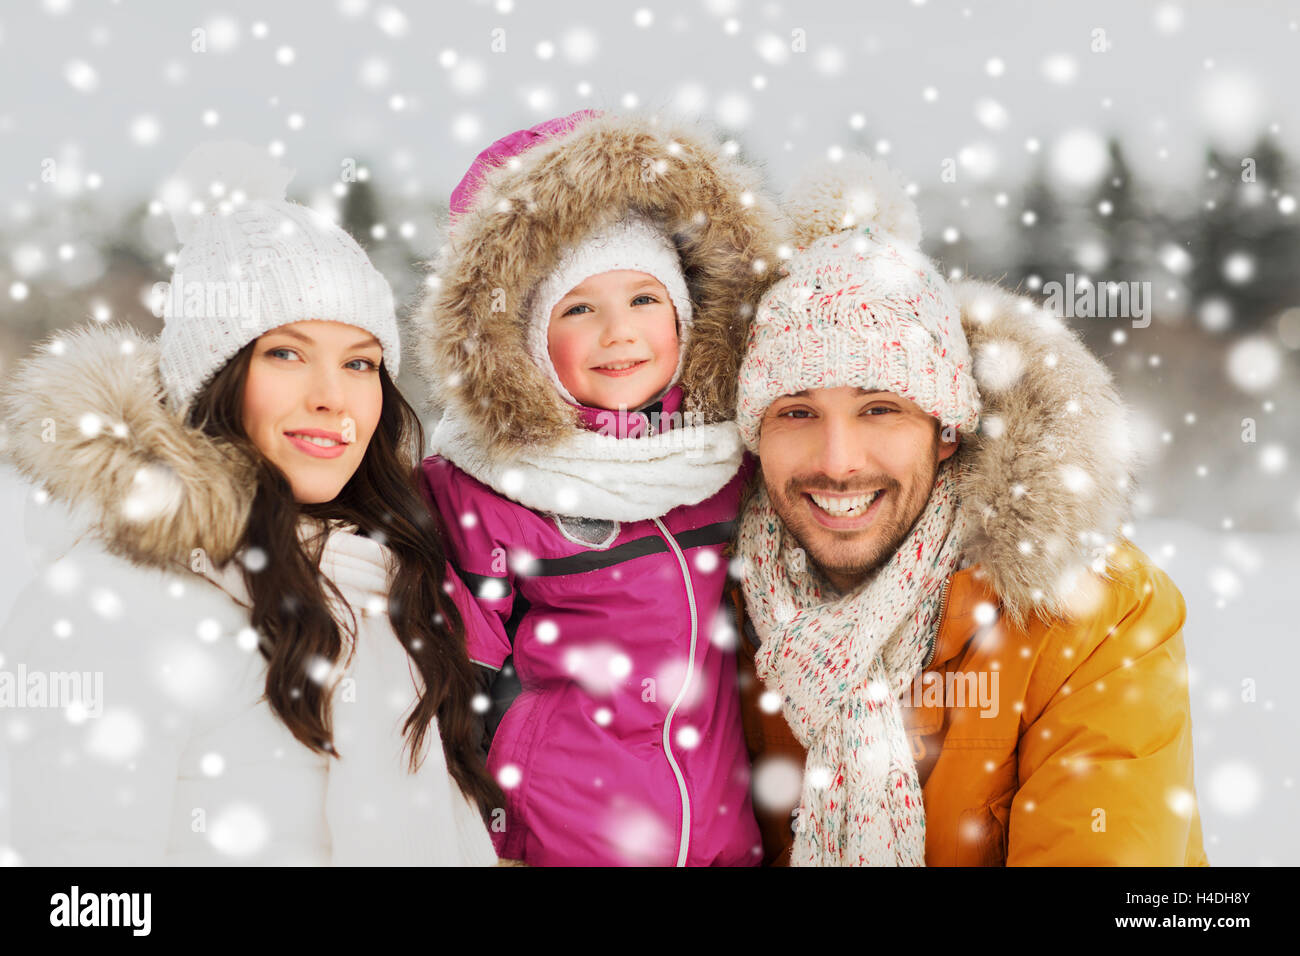 Famille heureuse avec l'enfant dans les vêtements d'hiver en plein air Banque D'Images